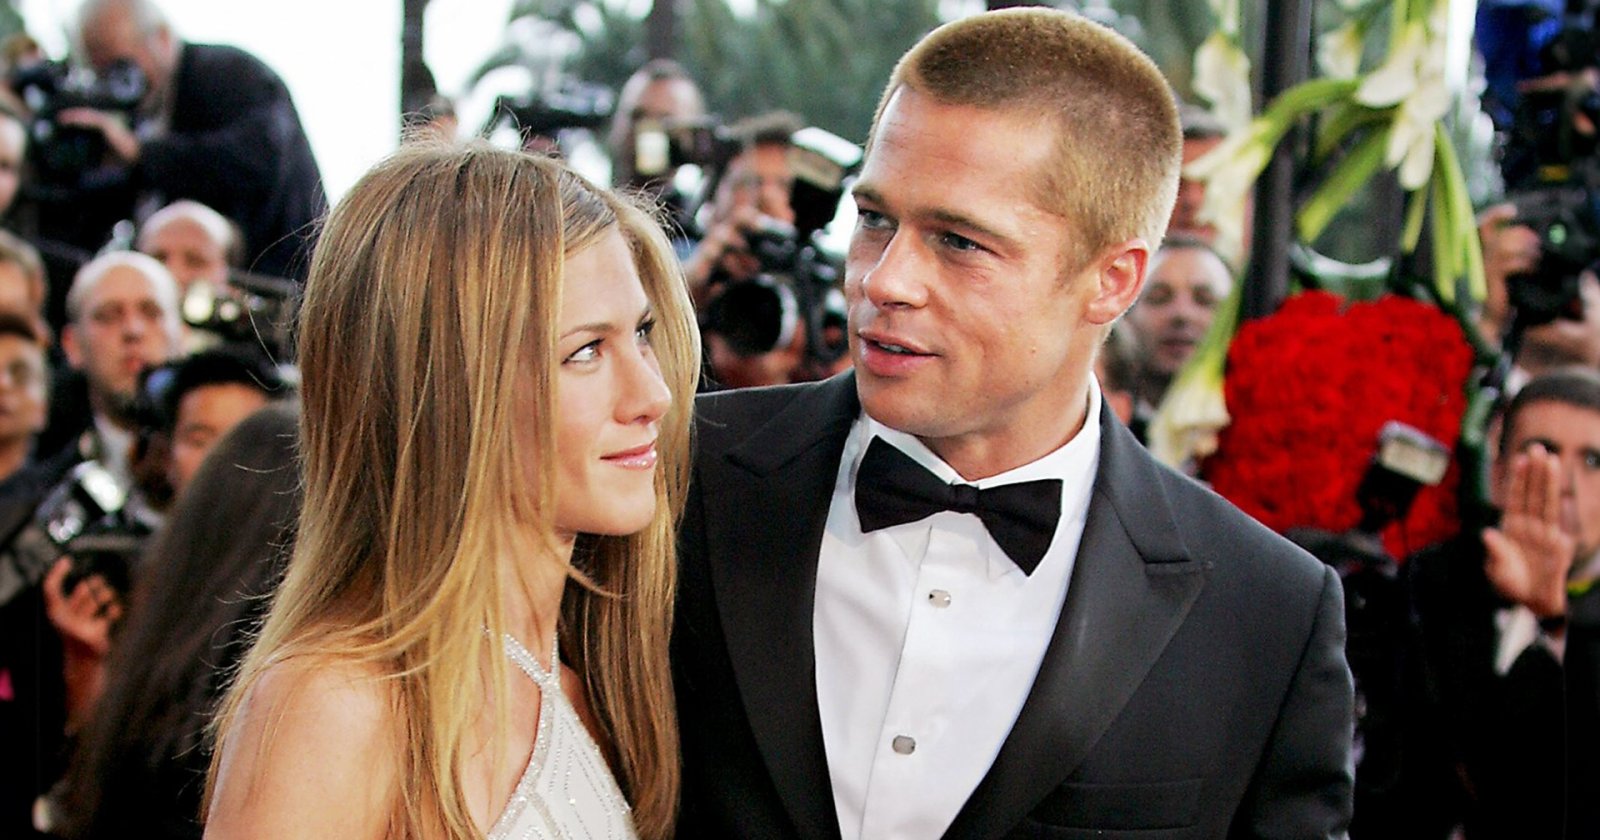 แขกขอเมาท์ งานแต่งงาน Brad Pitt และ Jennifer Aniston มีกำแพงคาเวียร์ให้แขกกินได้ไม่อั้น!